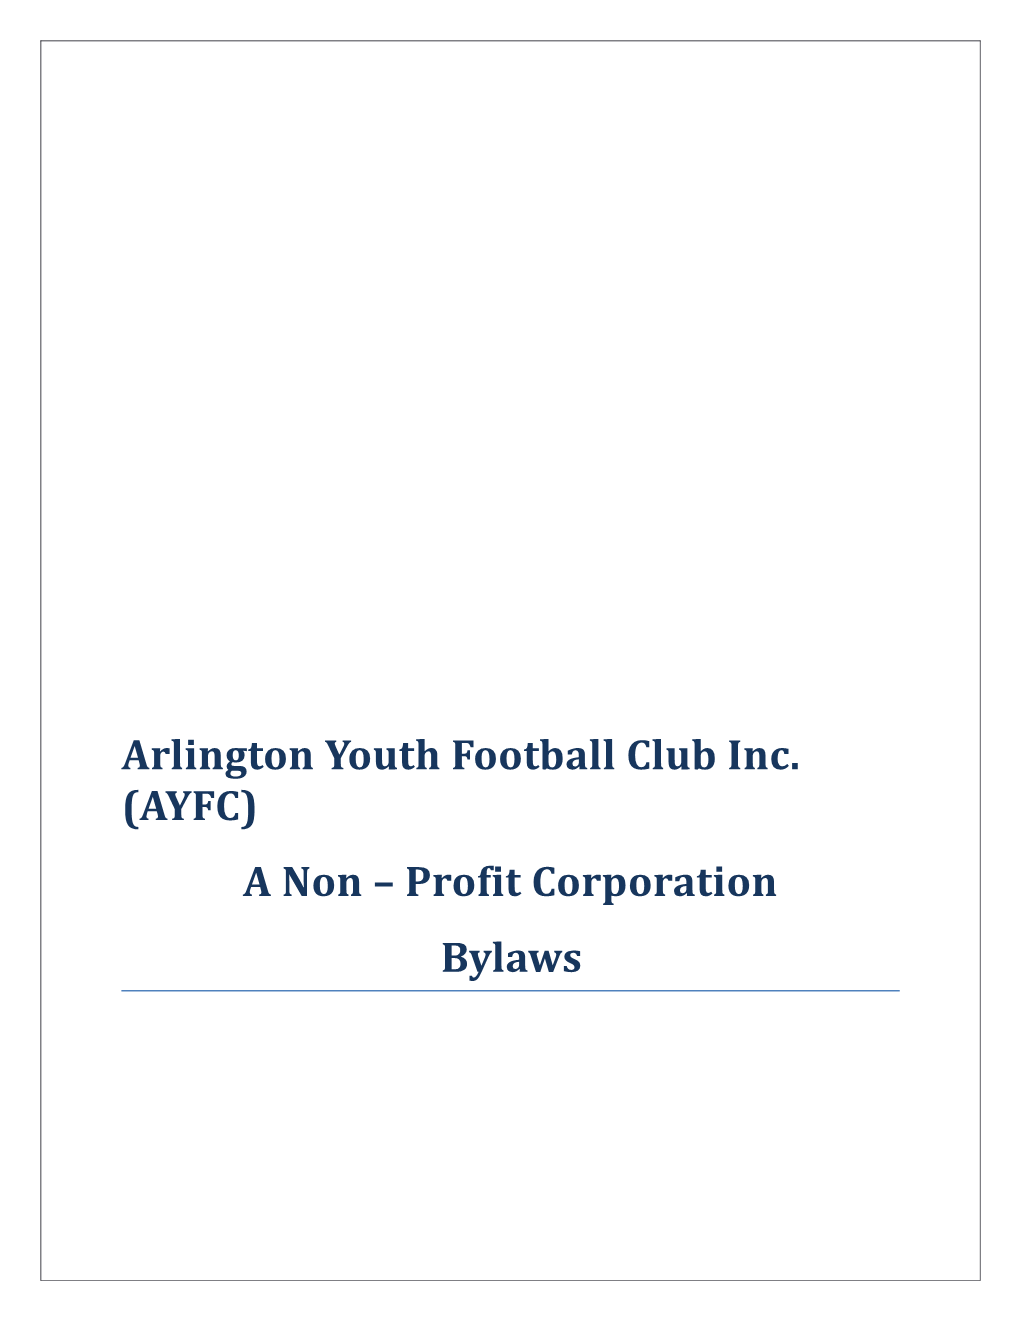 Arlington Youth Football Club Inc. (AYFC)